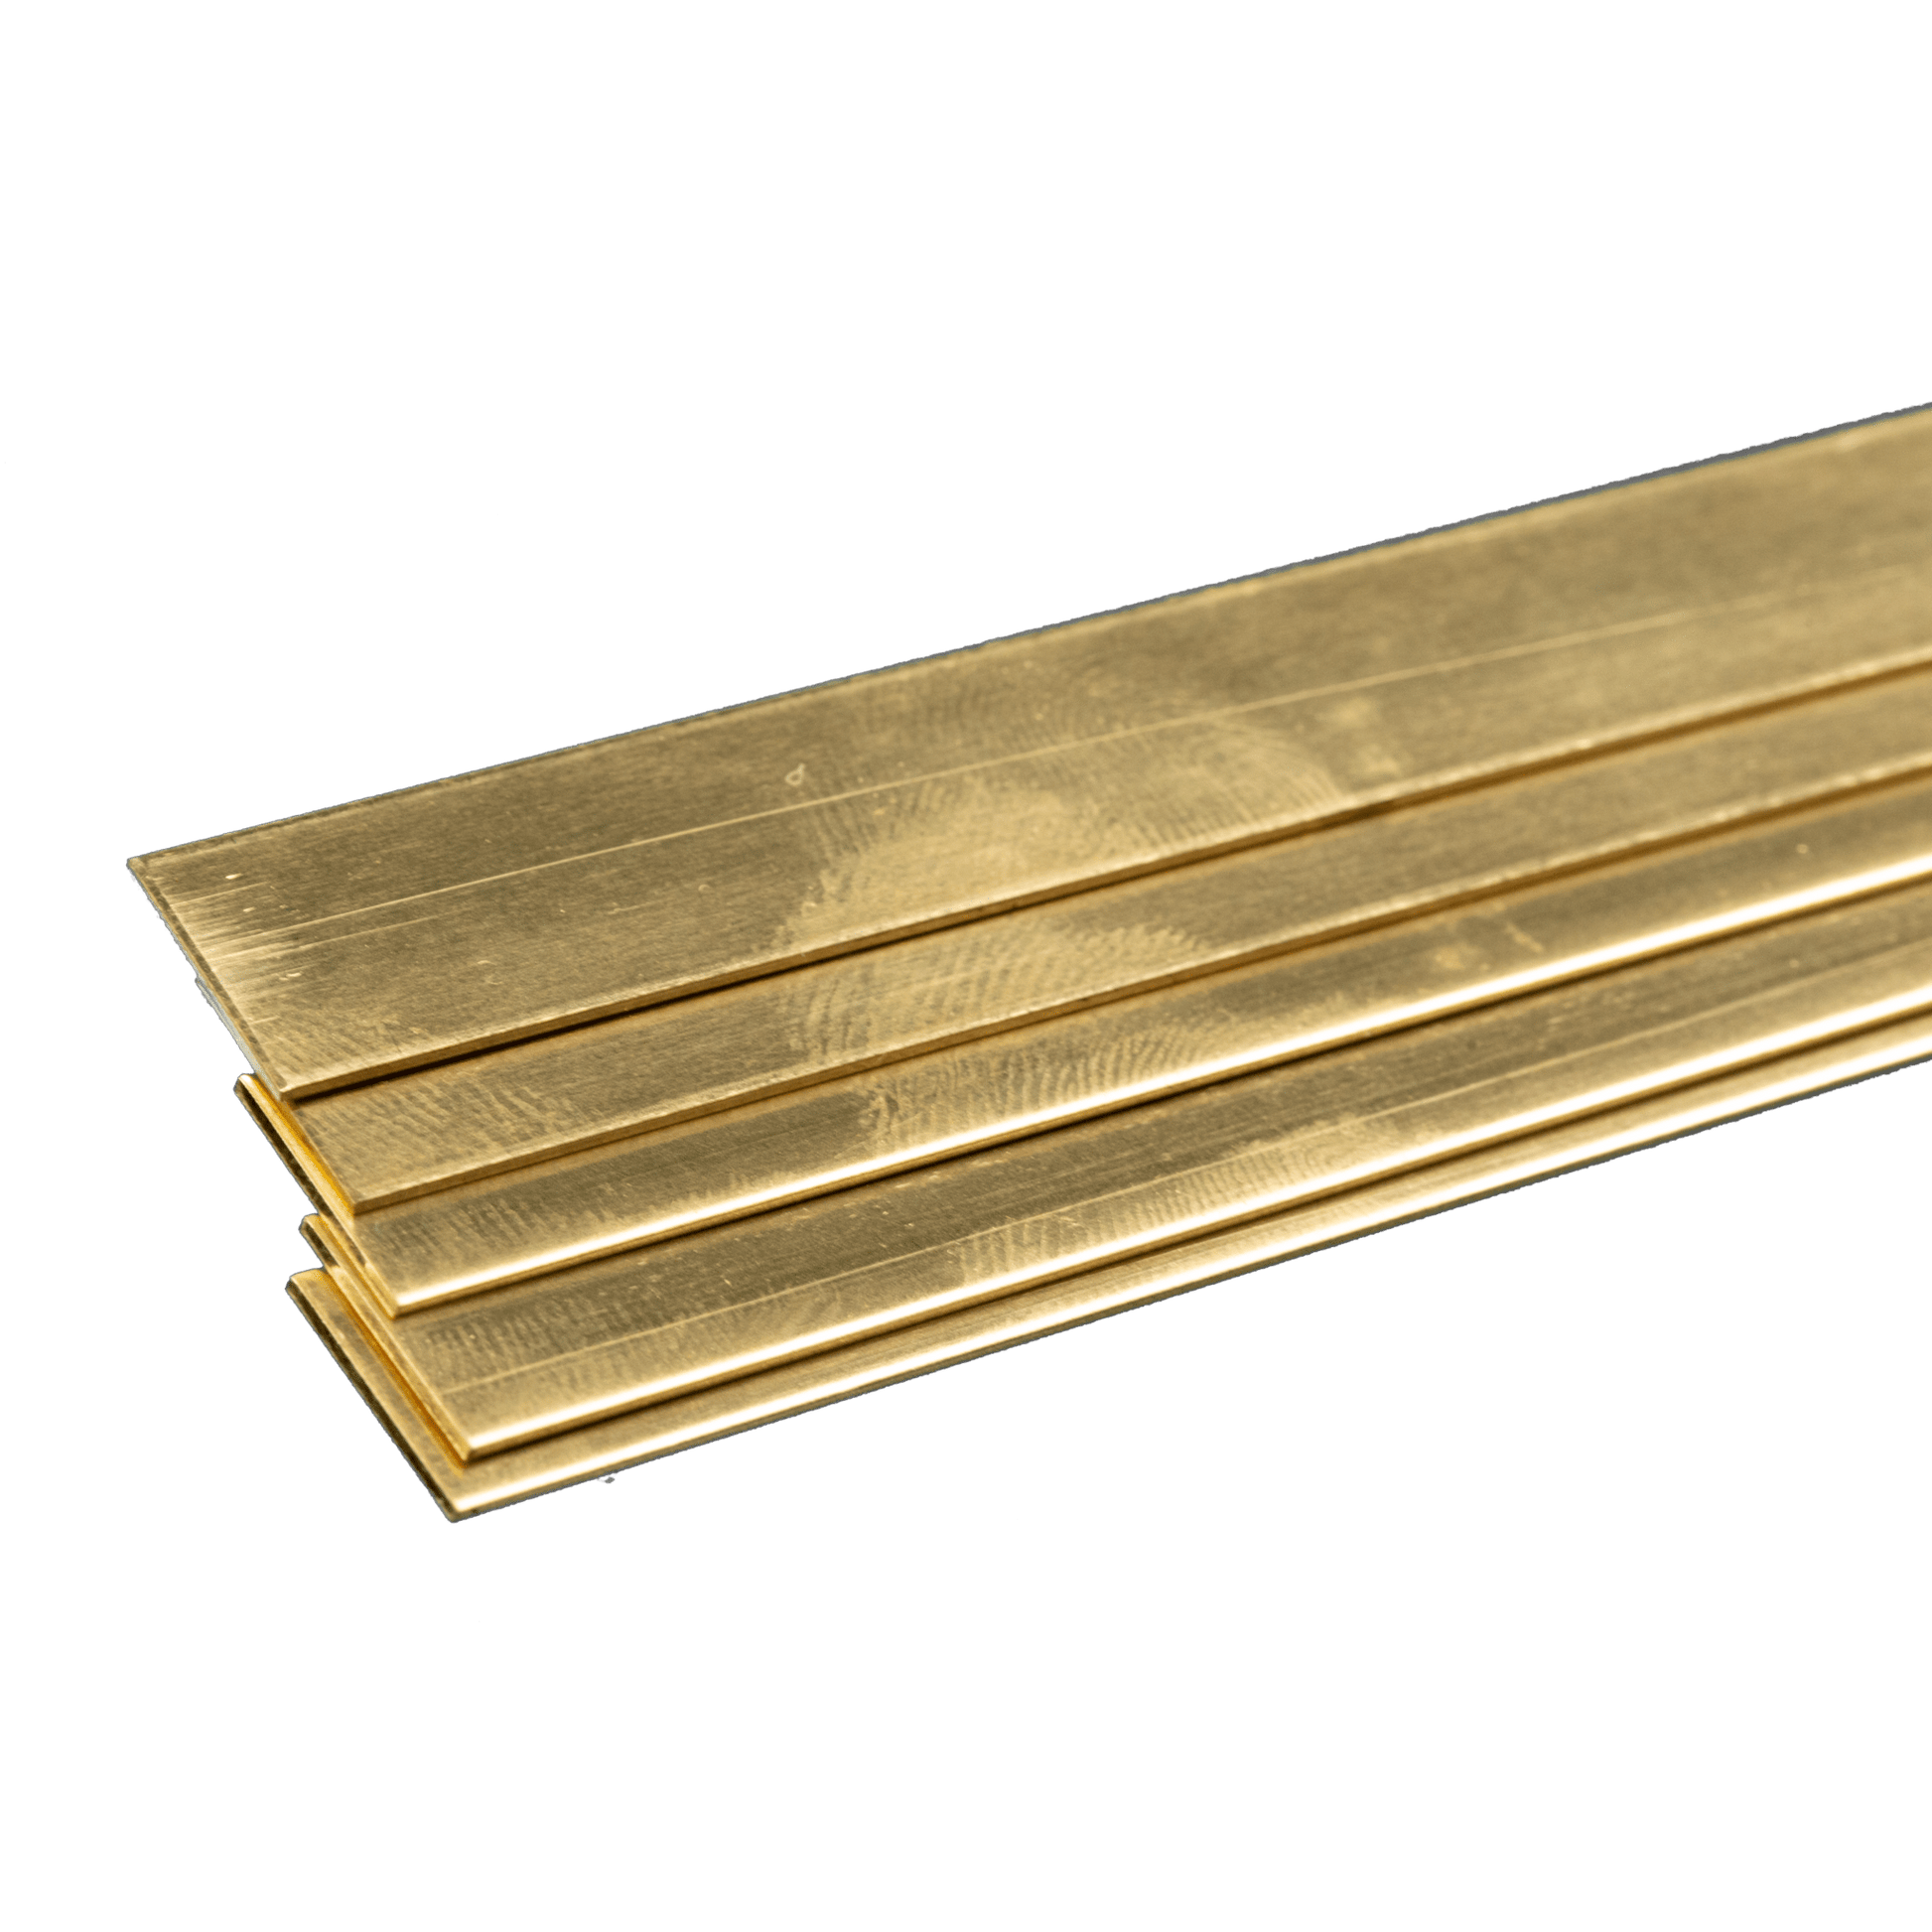 K&S Brass Strip .032x1/2x36 (5) 9721